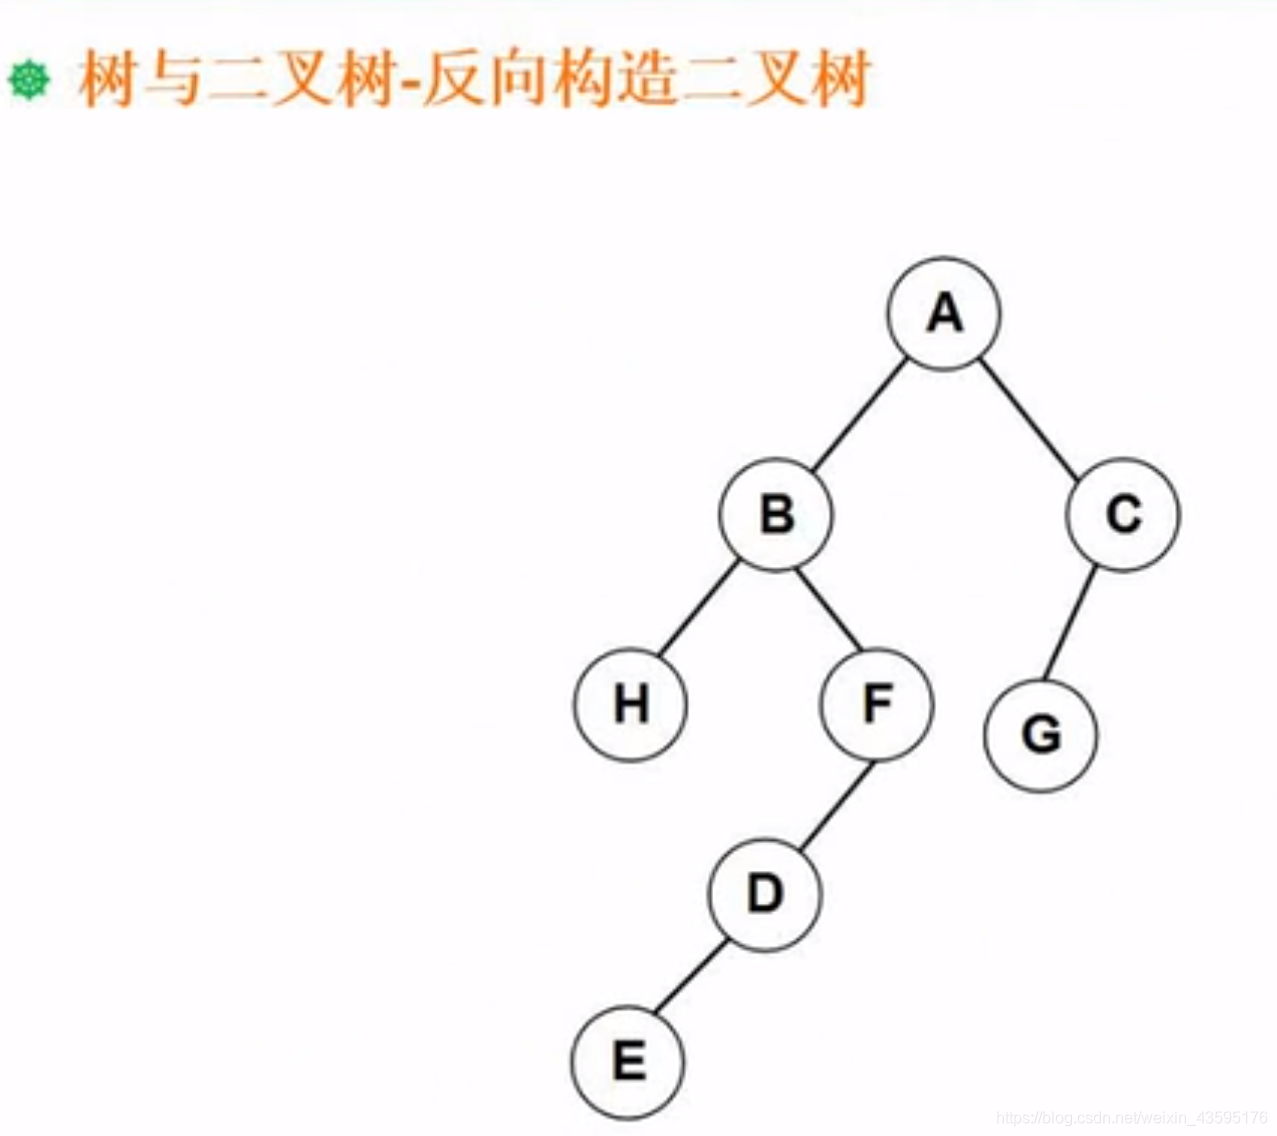 反向构造二叉树2